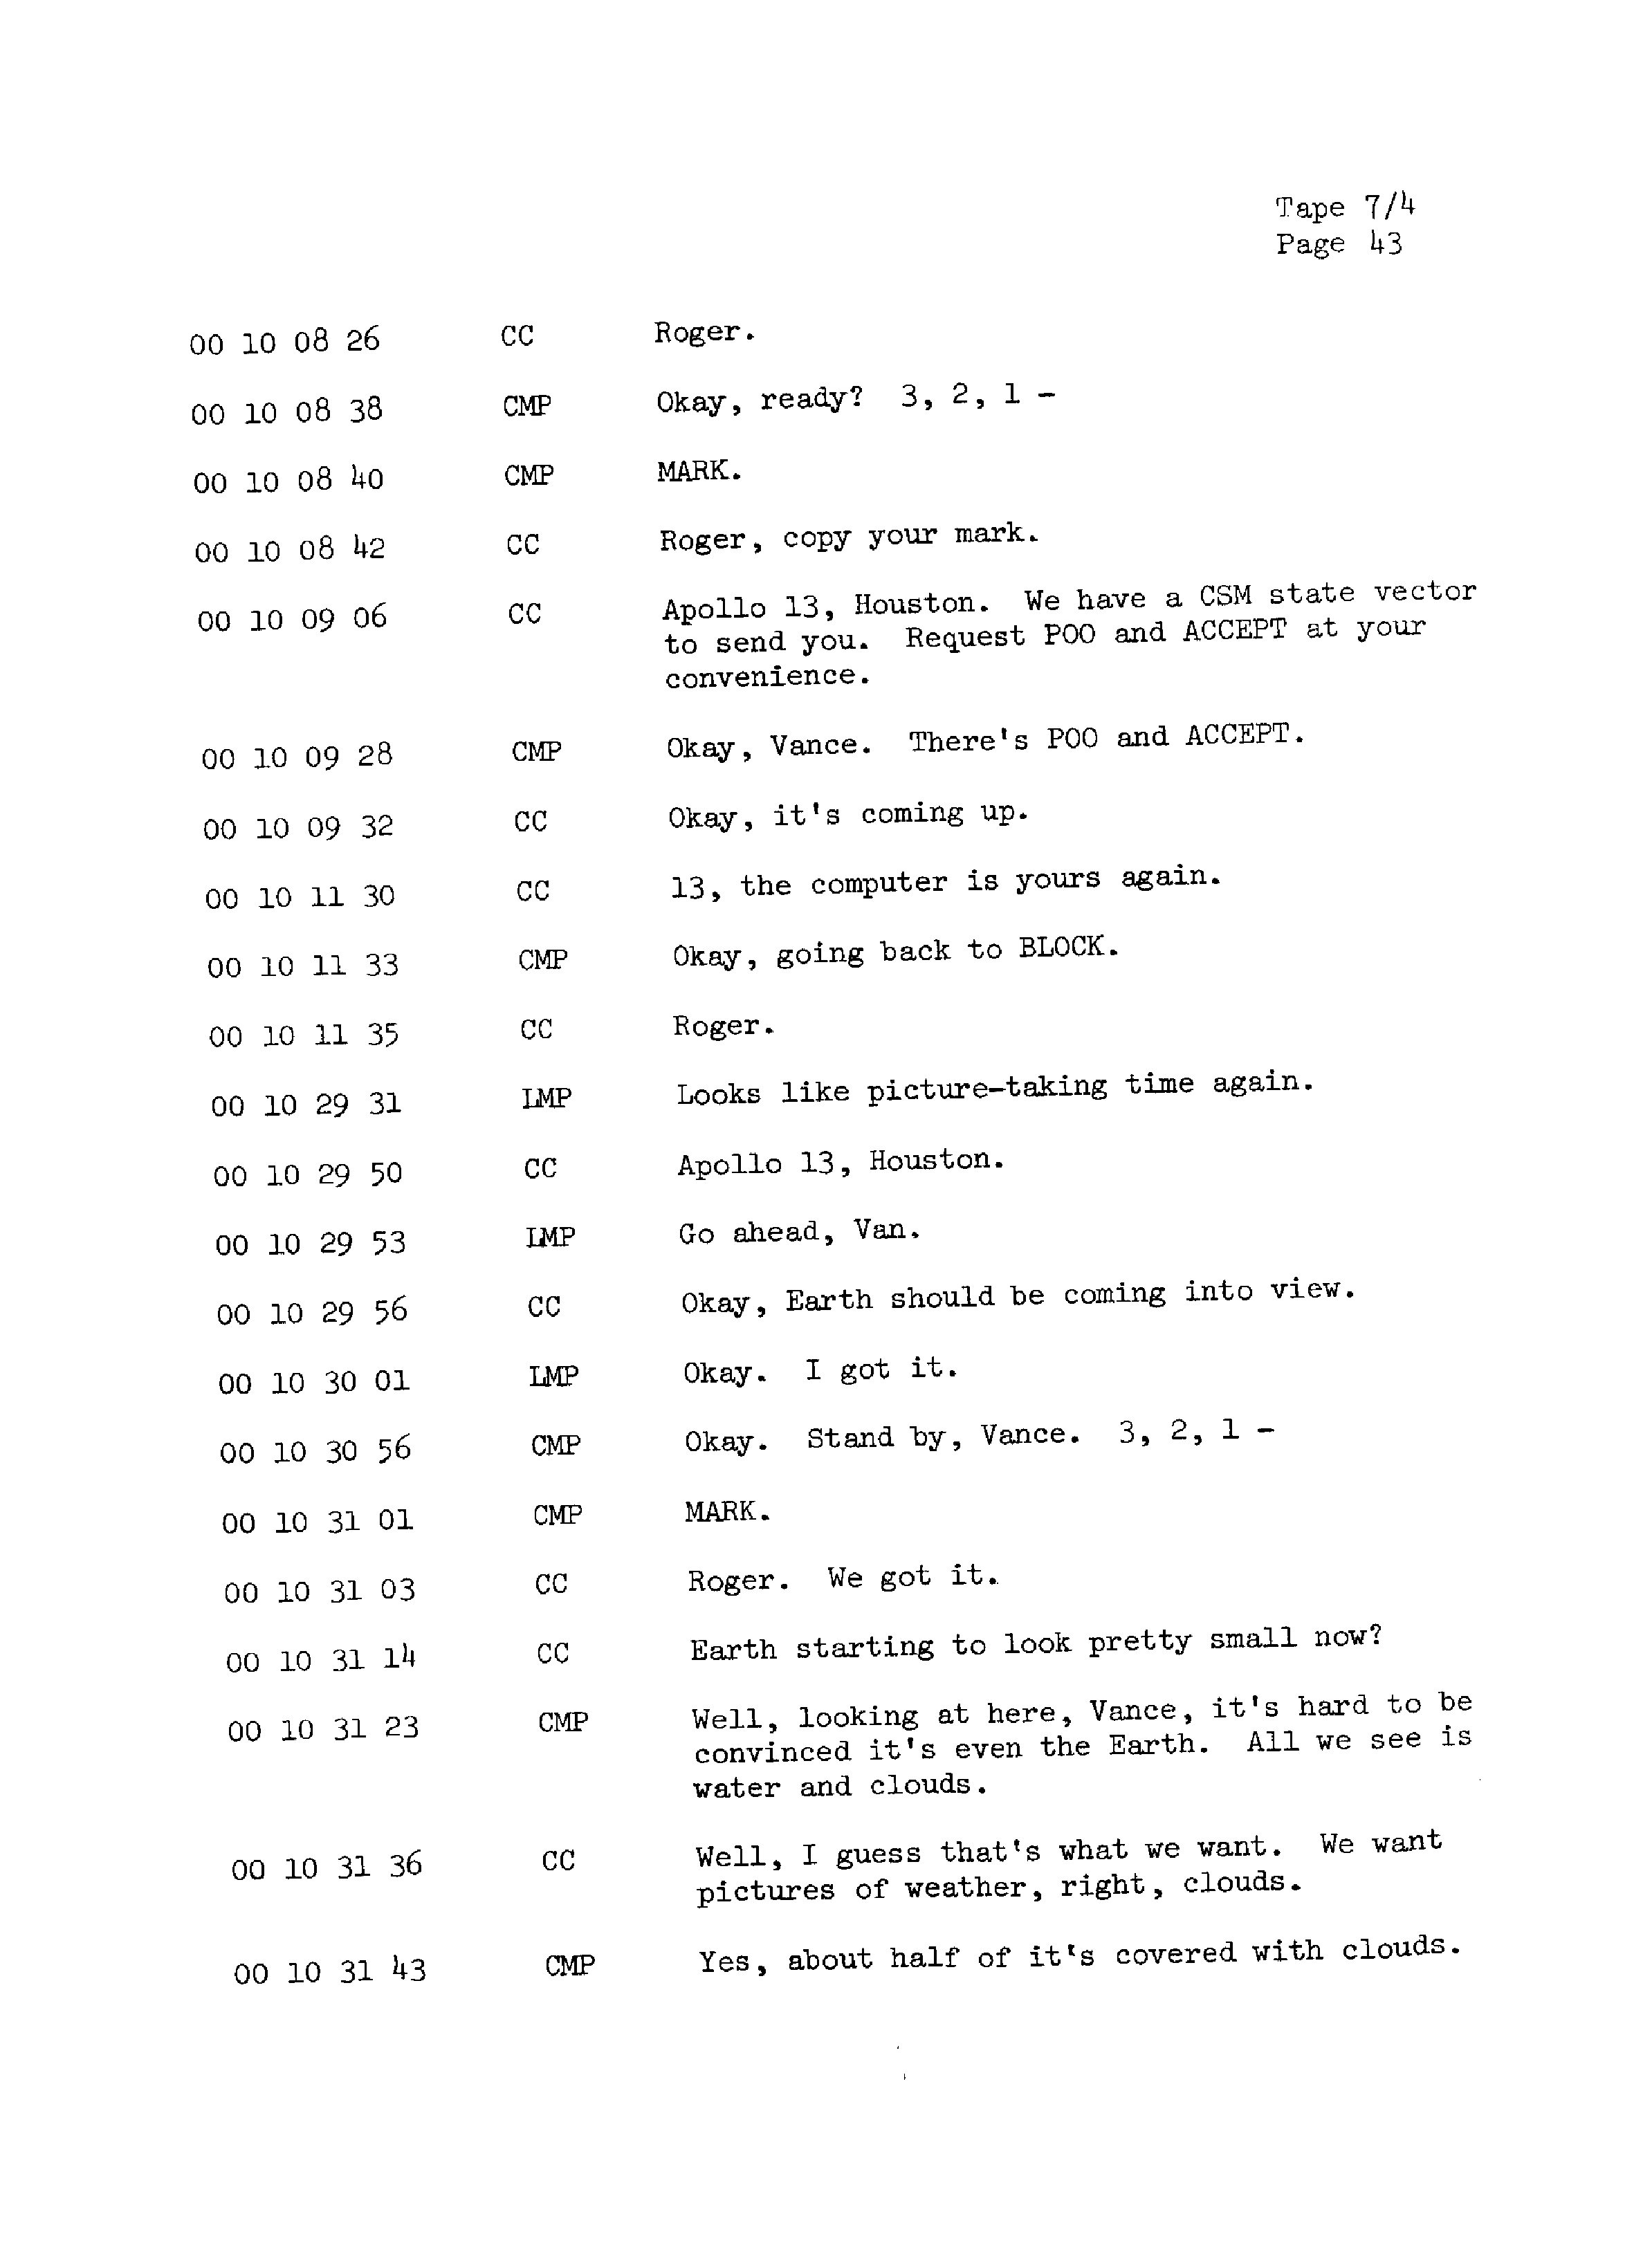 Page 50 of Apollo 13’s original transcript